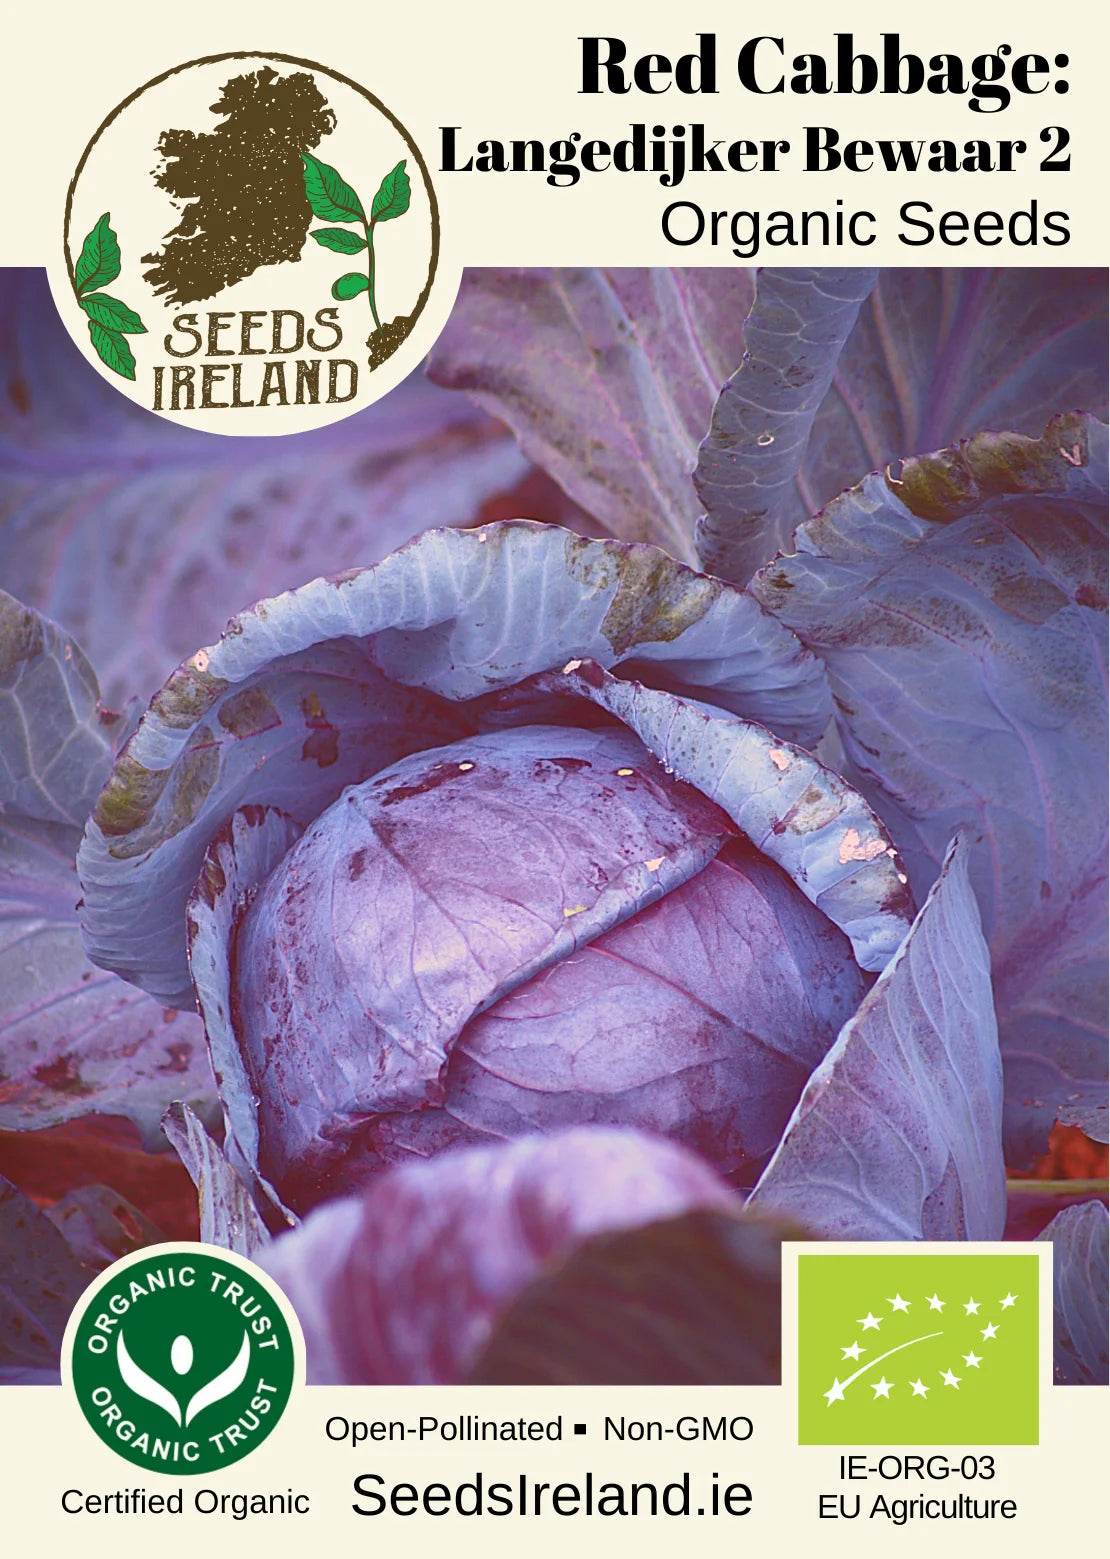 Red Cabbage: Langedijker Bewaar 2 Organic Seed